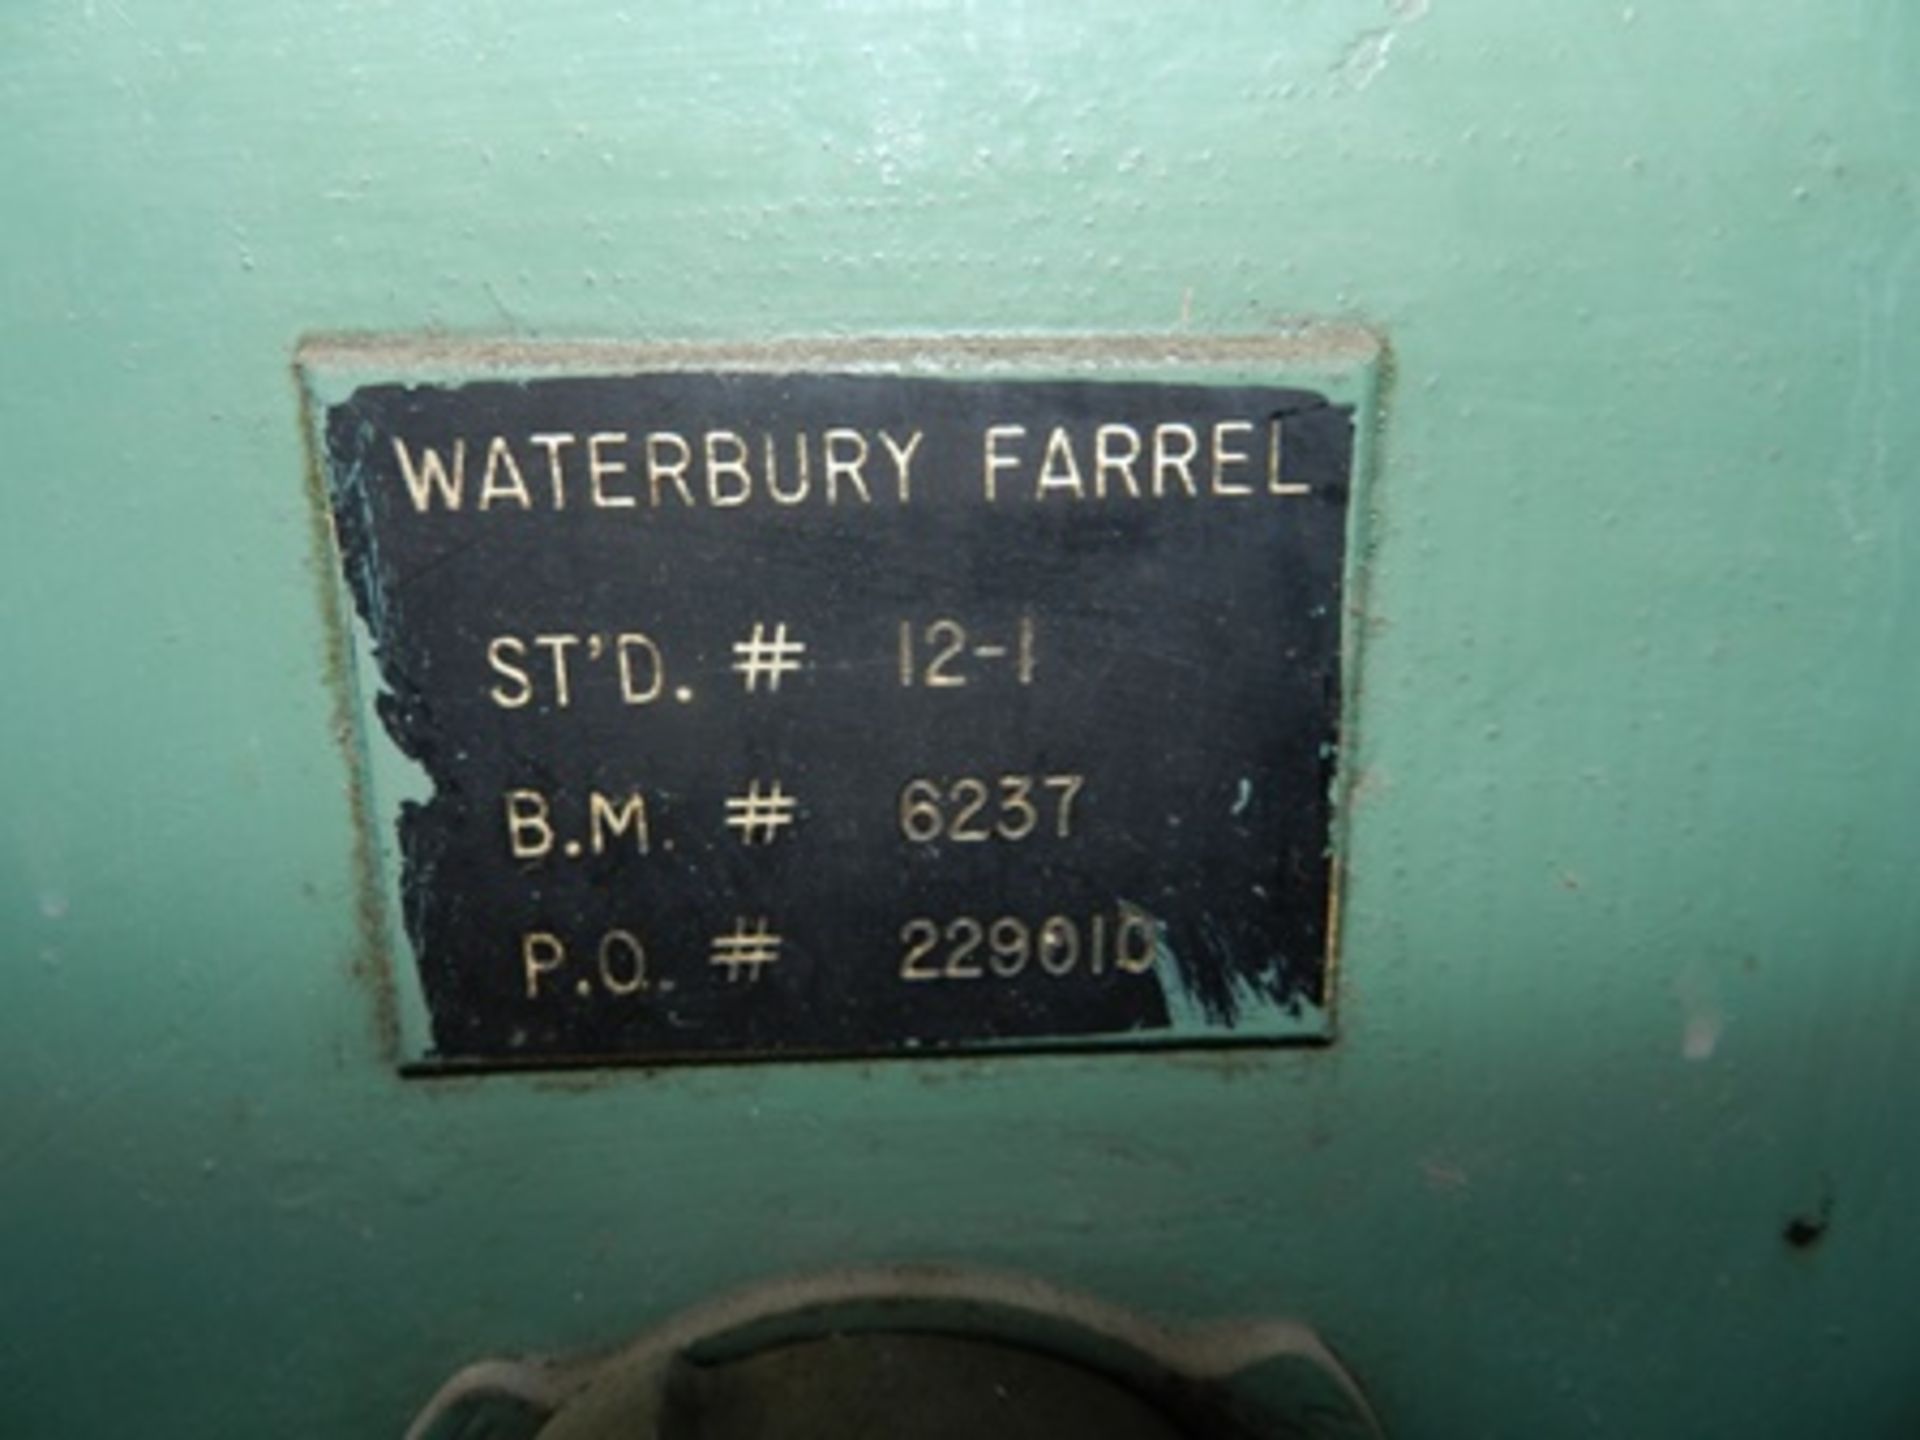 Máquina ranuradora de tornillos marca Waterbury Farrel modelo 5 de 5/16" alta vel. serie 221301-264 - Image 13 of 17